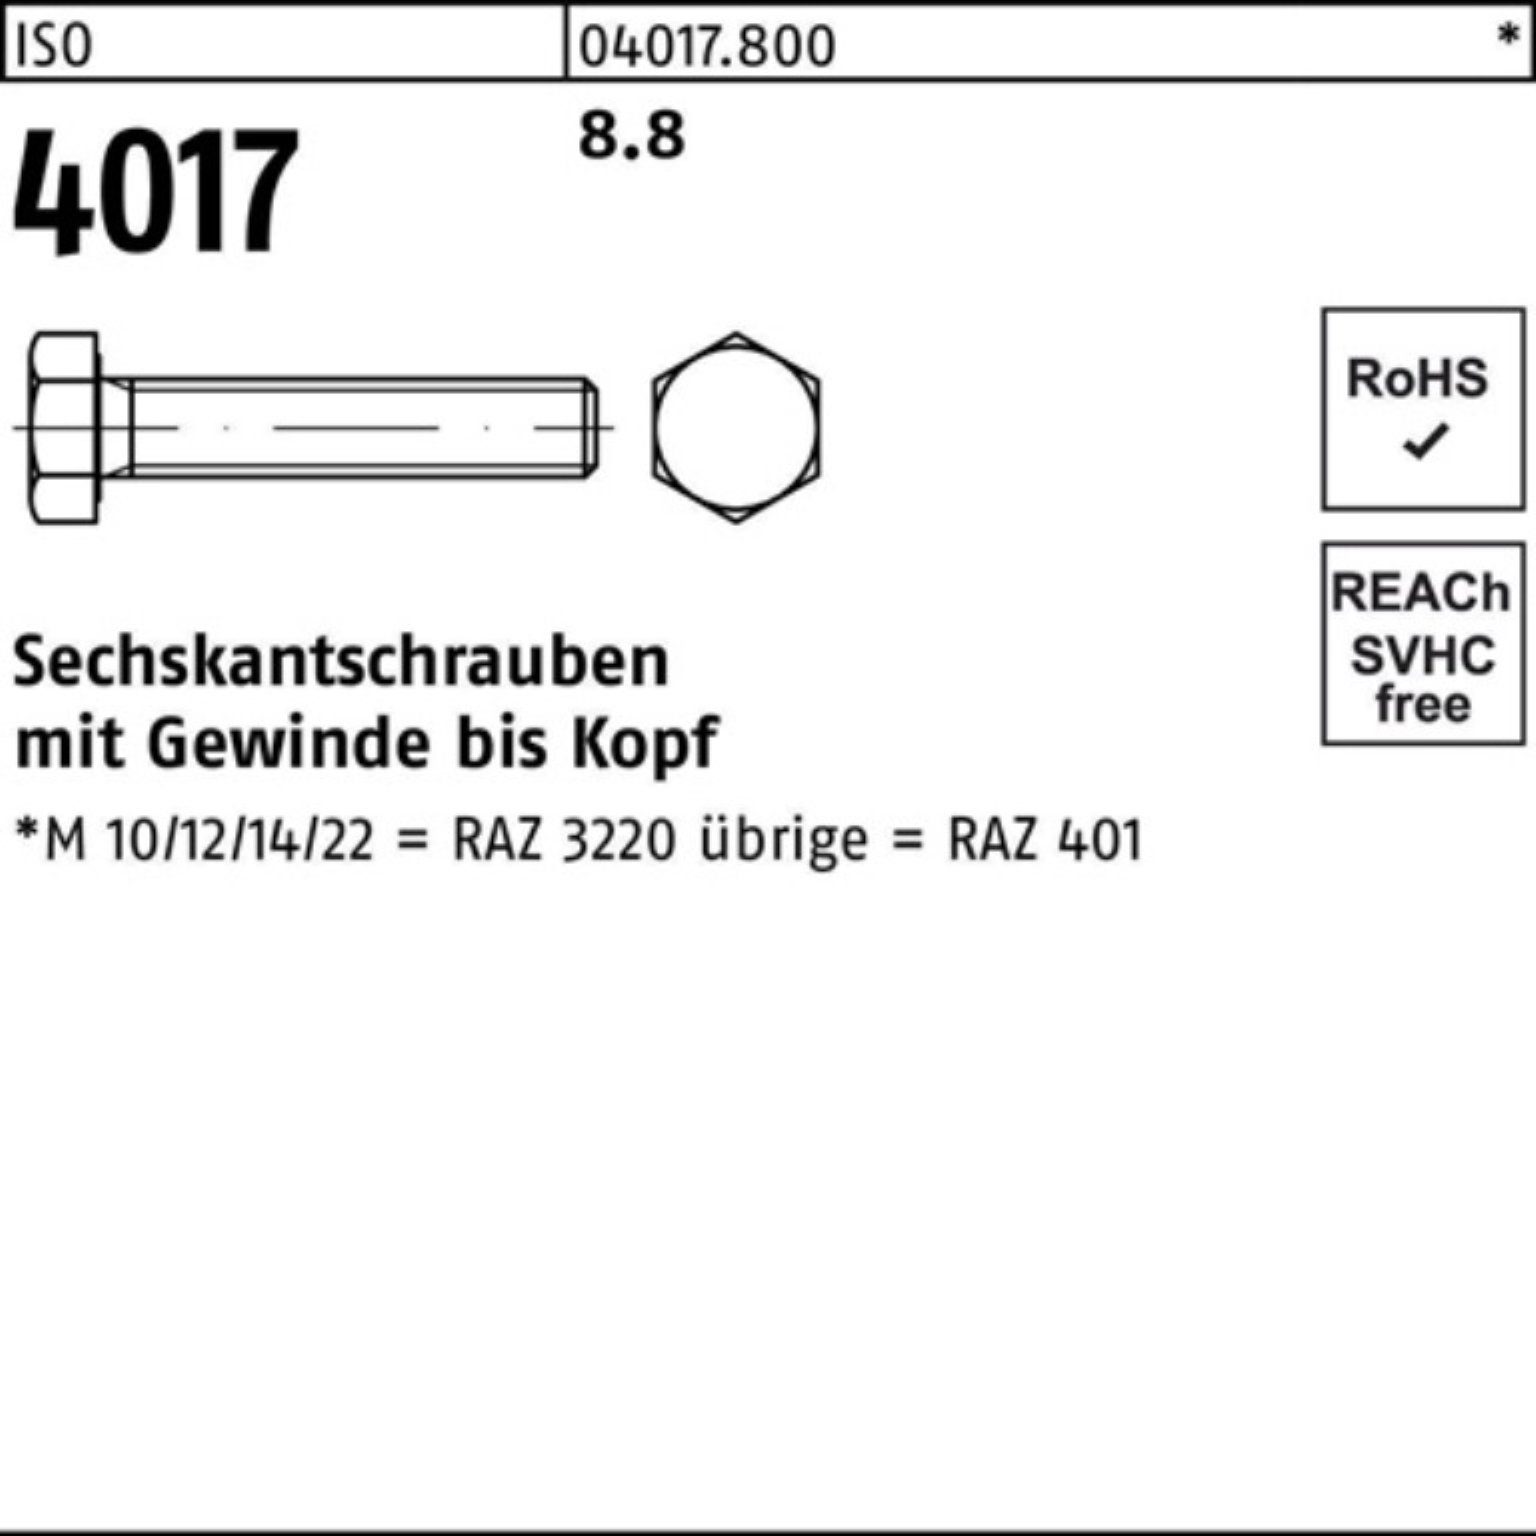 ISO VG Bufab Pack Stück 4017 4017 8.8 500 Sechskantschraube 6 Sechskantschraube ISO M6x 500er